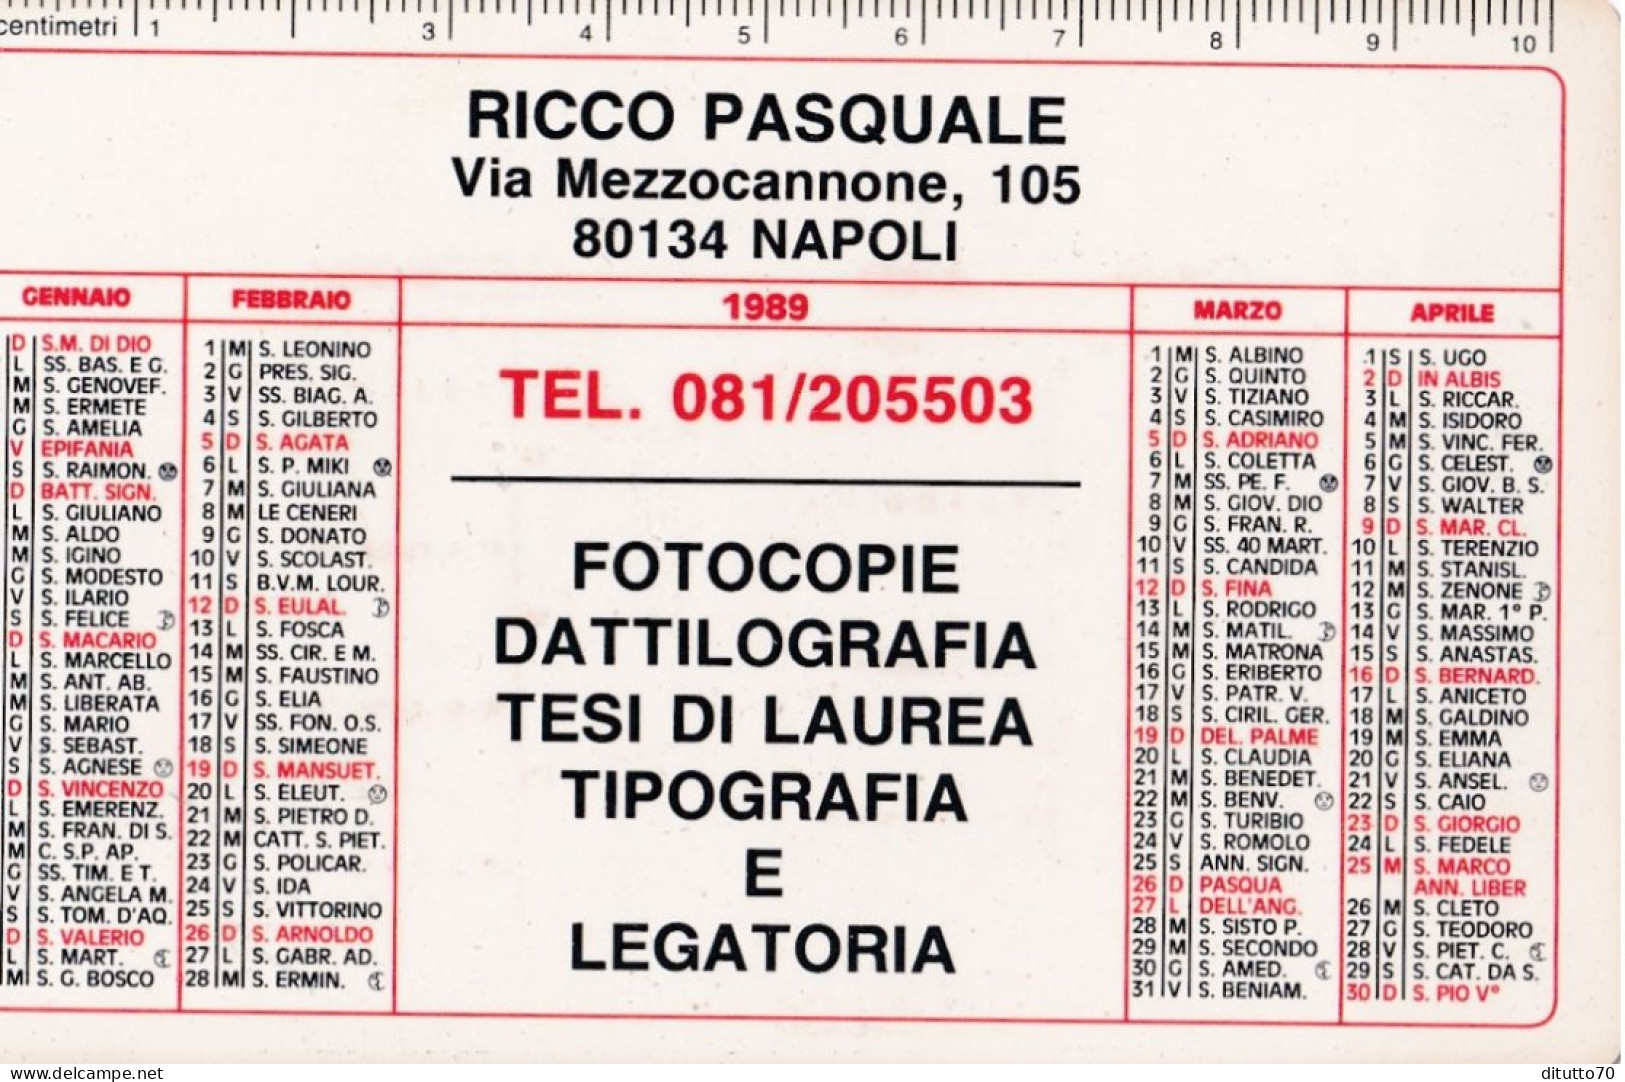 Calendarietto - Fotocopie Dattilografia - Ricco Pasquale - Napoli - Anno 1989 - Small : 1981-90